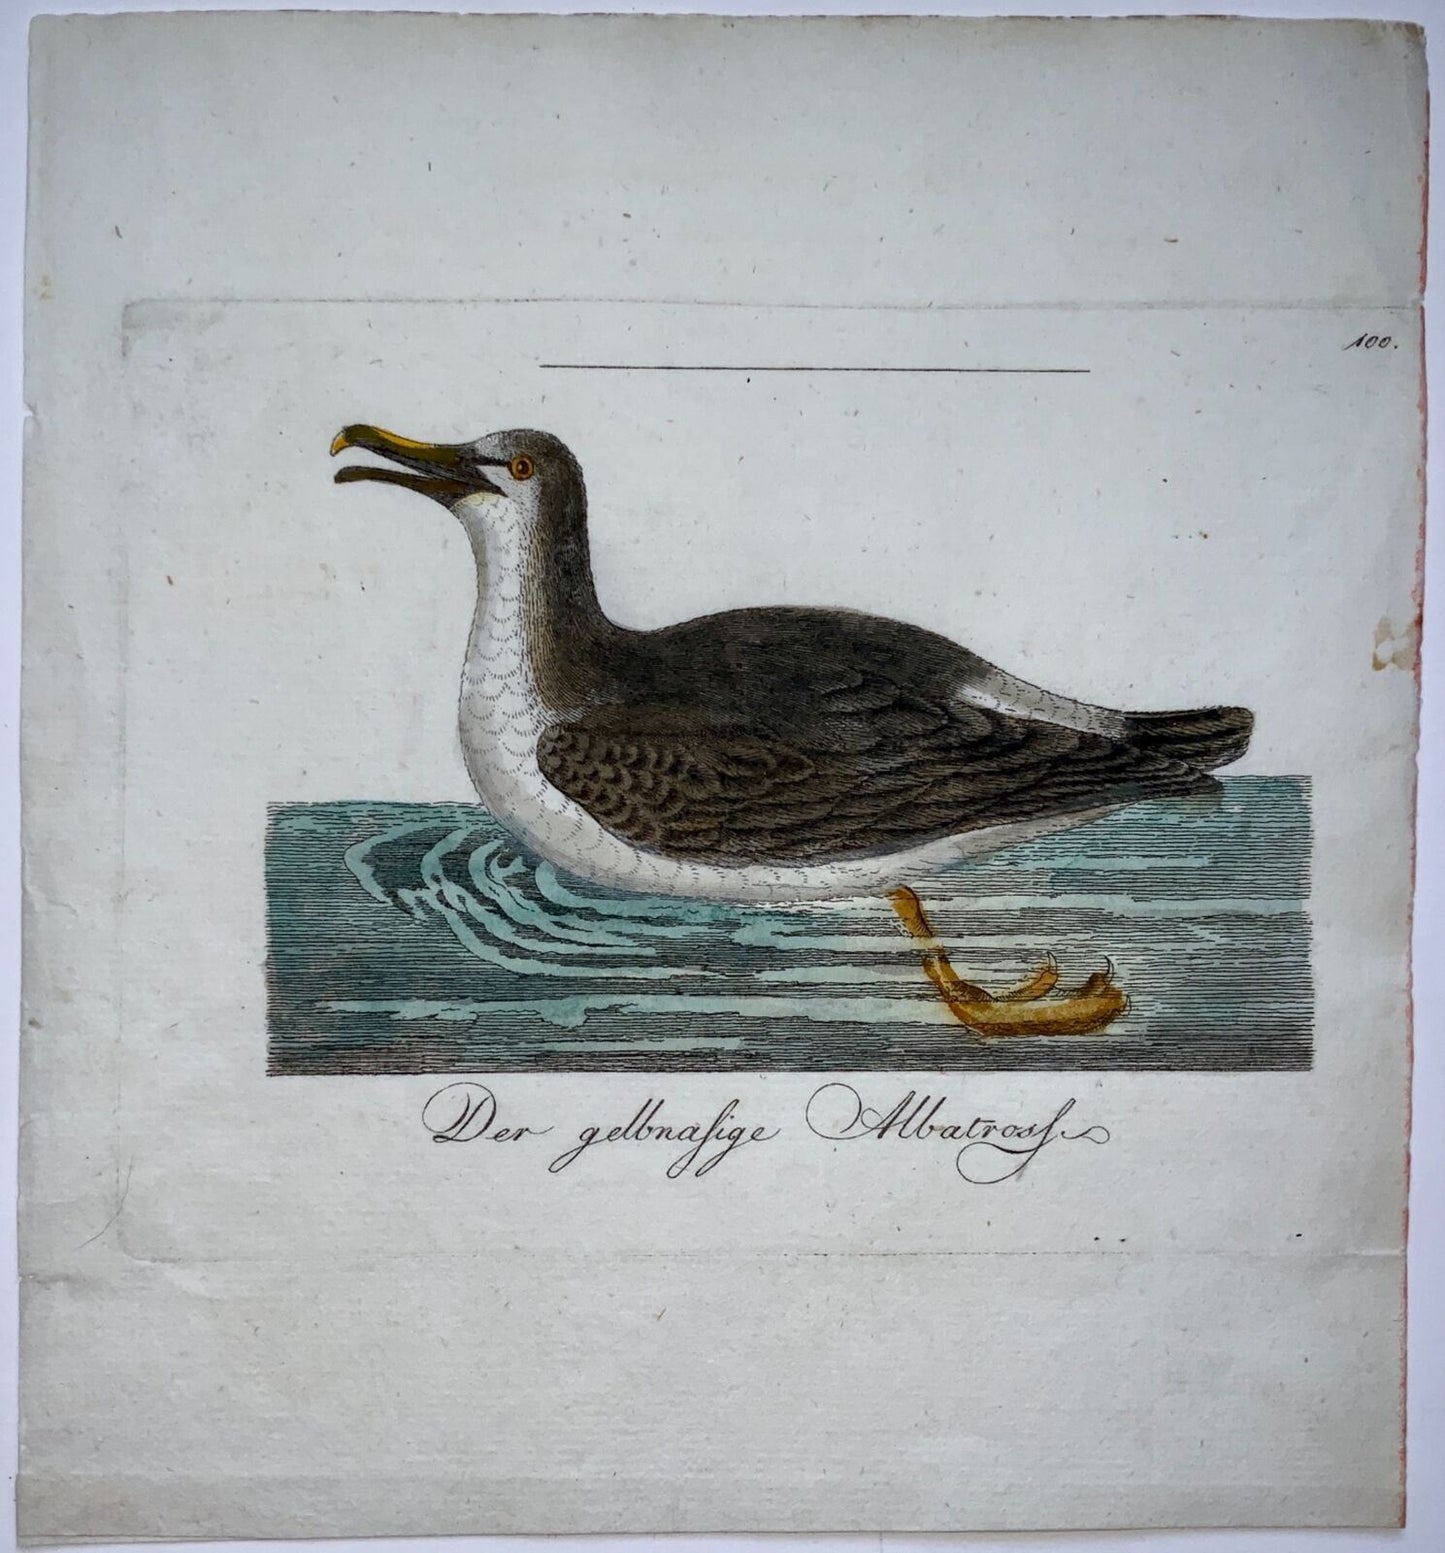 1793 Albatro, John Latham, incisione su rame colorata a mano, ornitologia